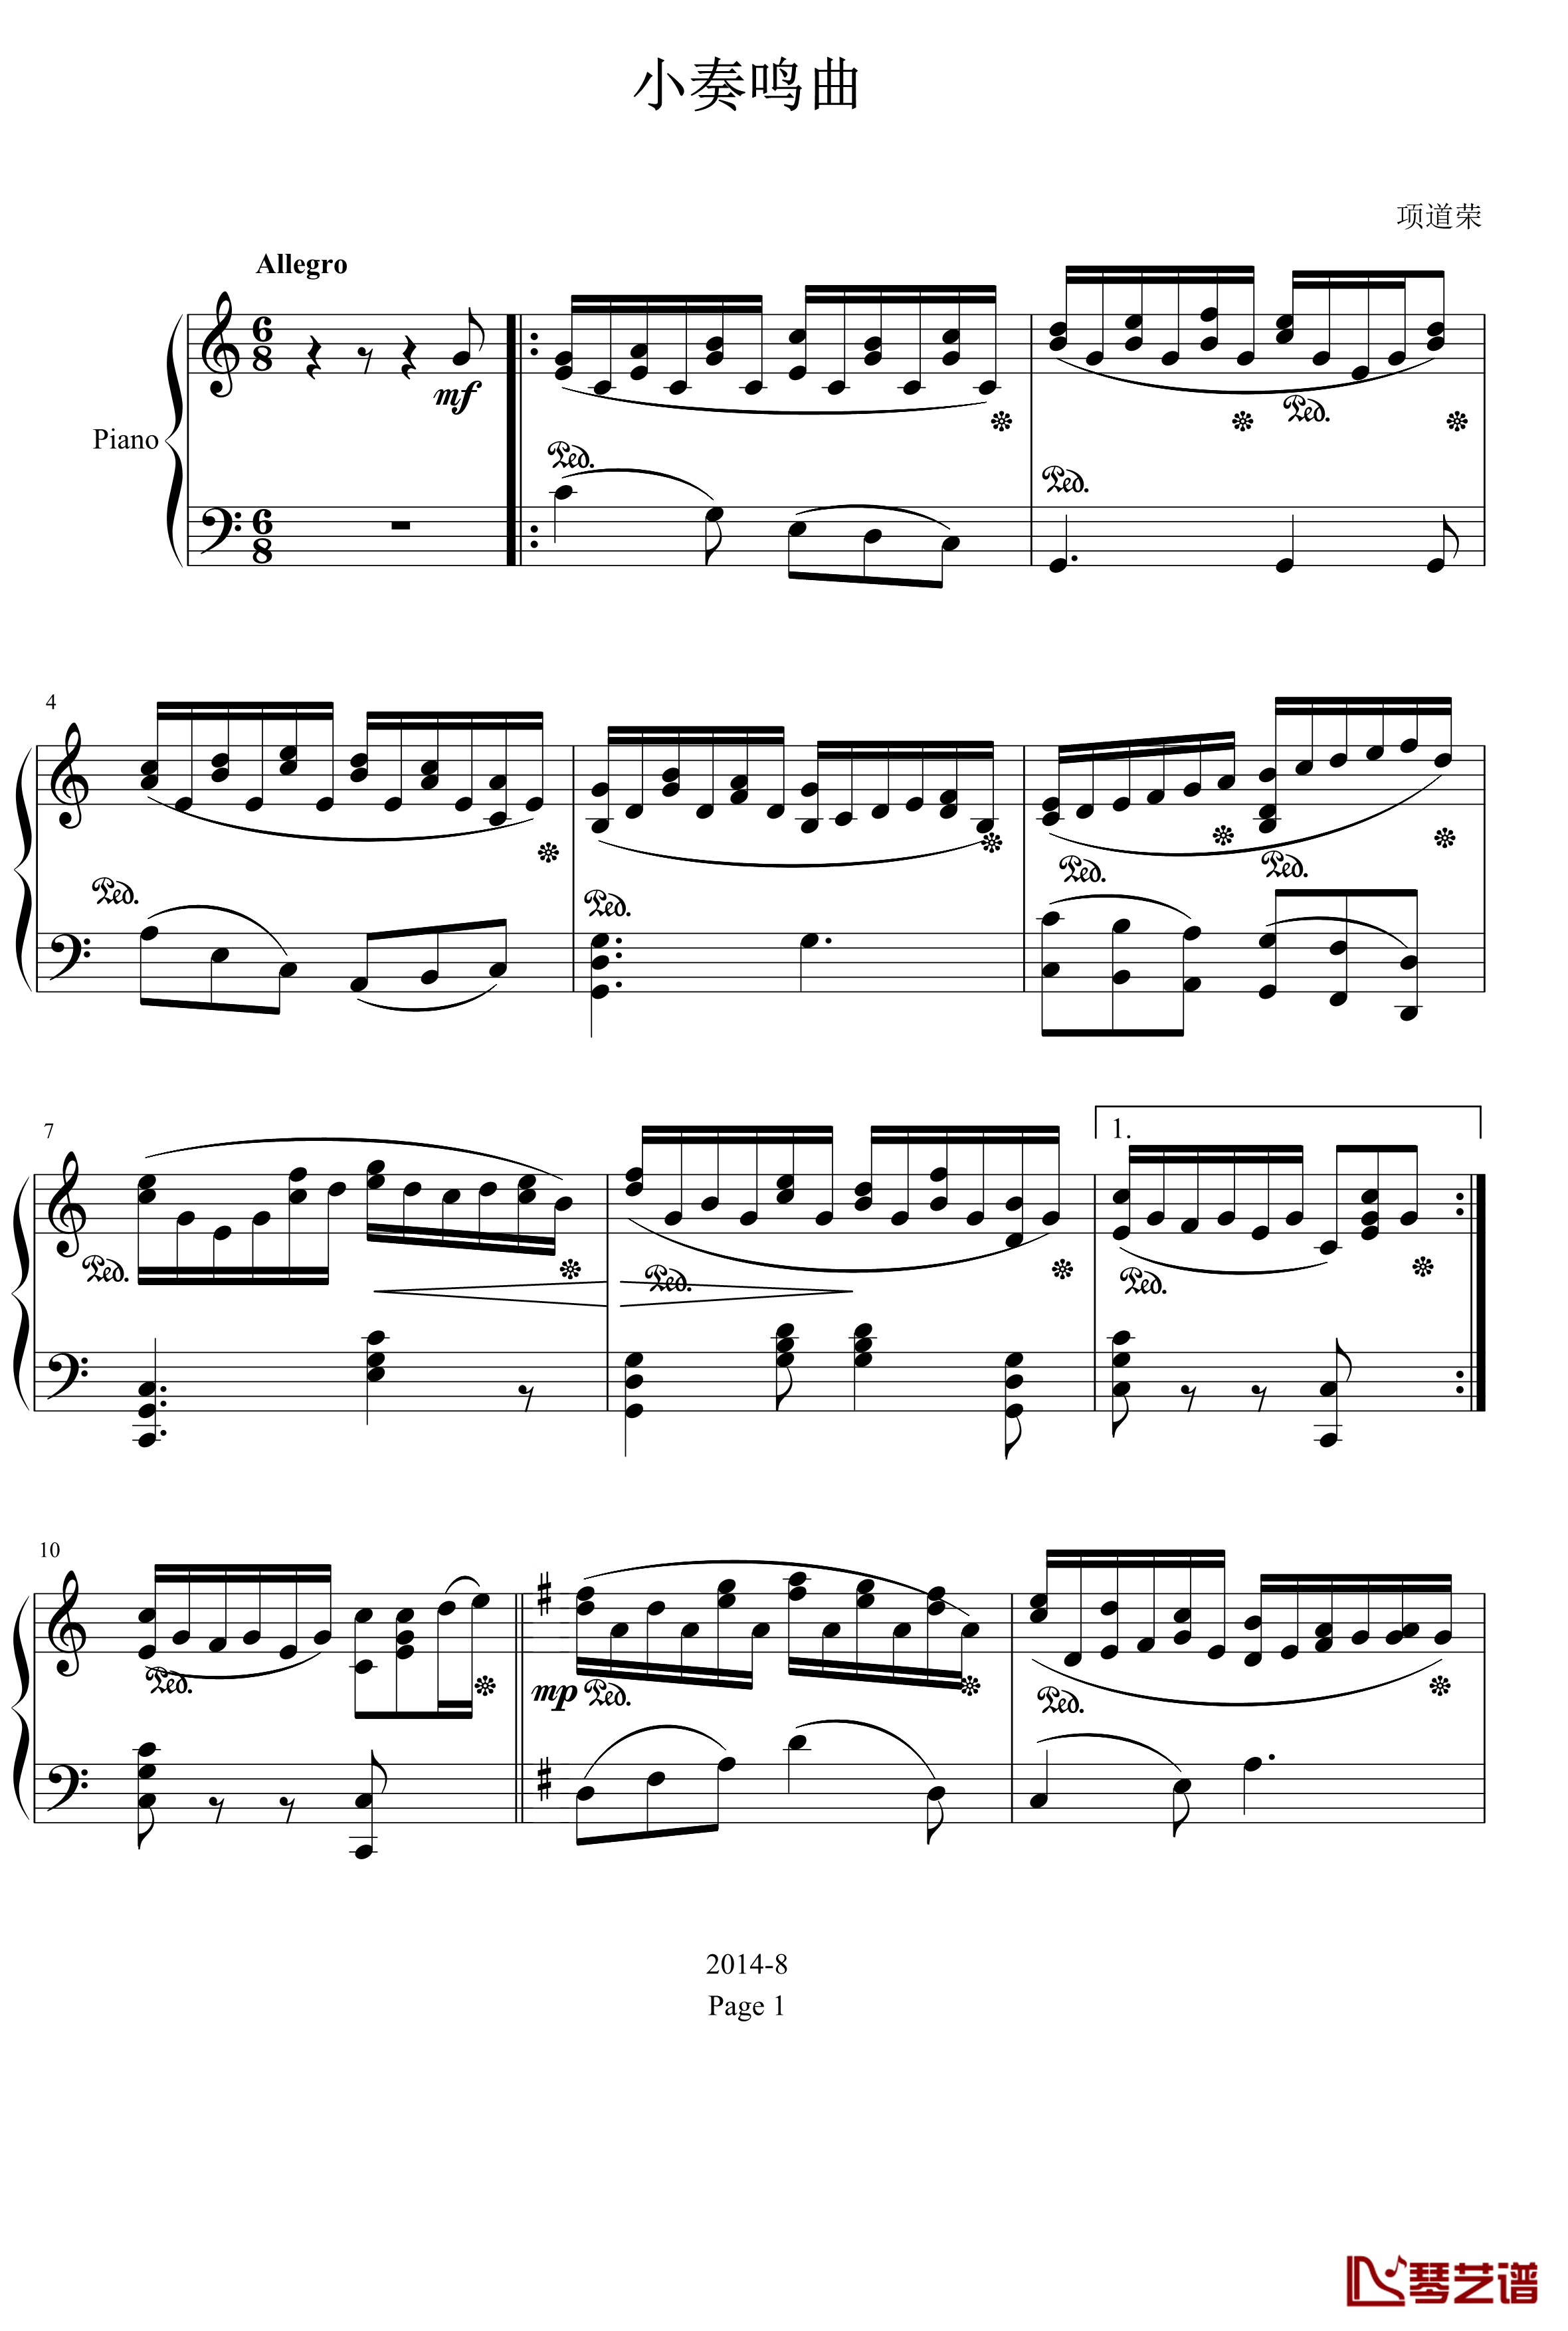 小奏鸣曲钢琴谱-C大调-项道荣1